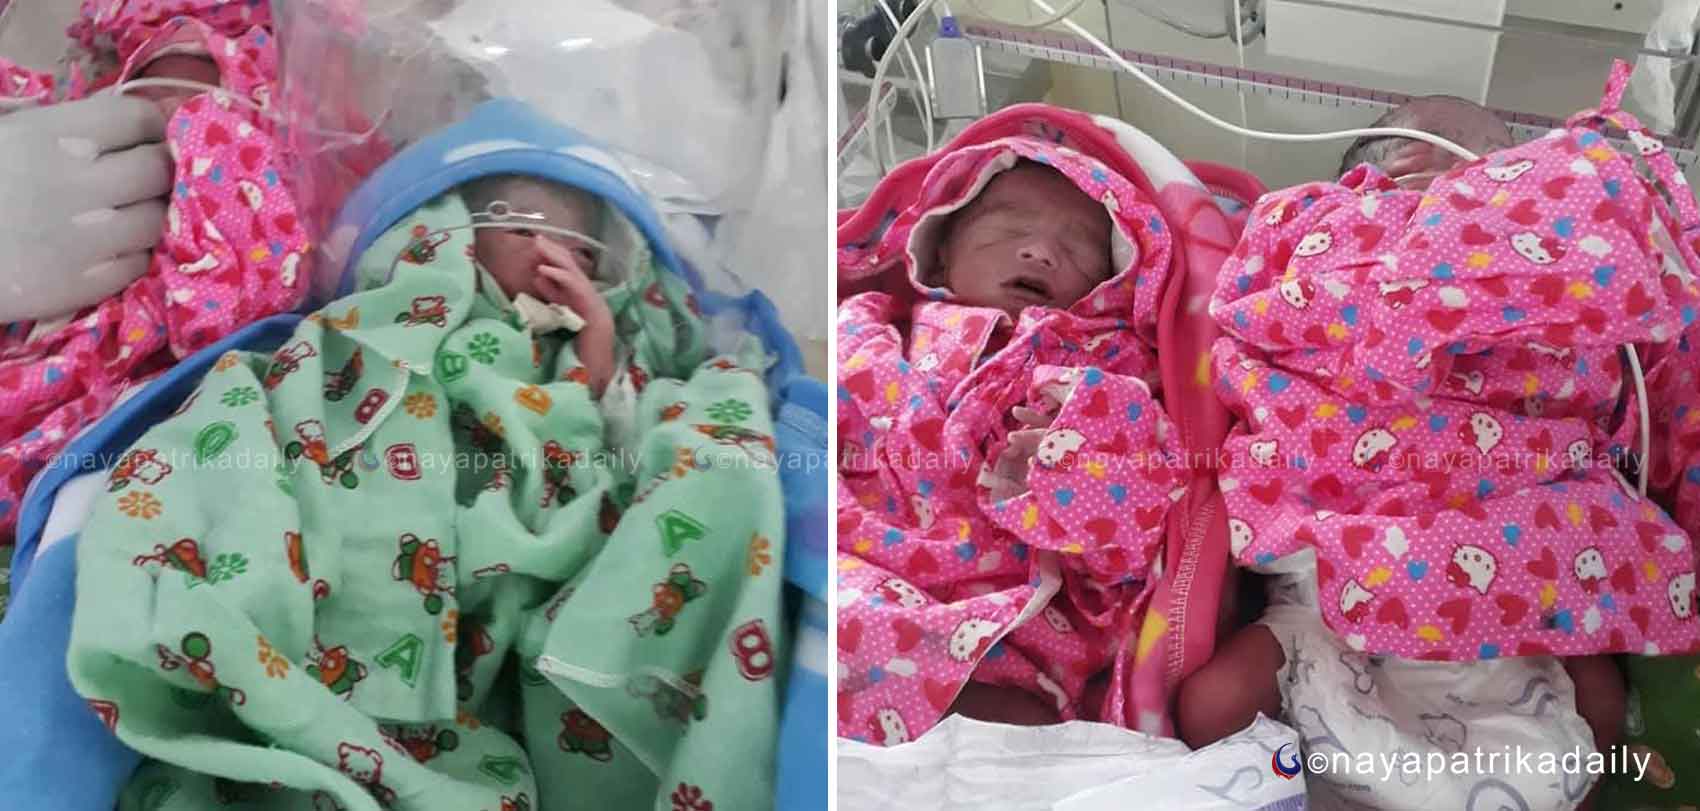 २७ वर्षीया महिलाले जन्माइन् एकै साथ चार शिशु